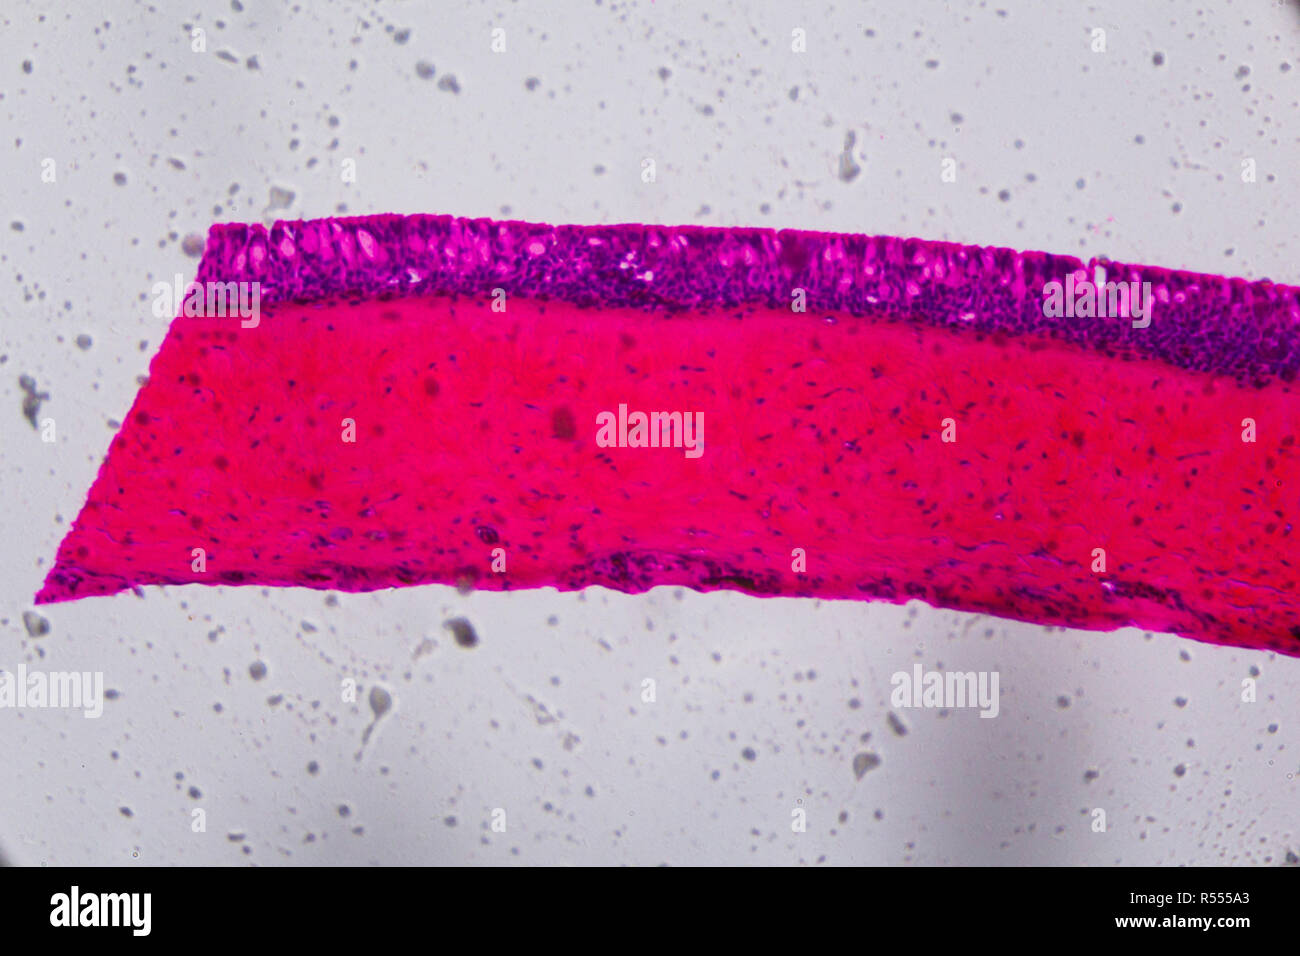 Anodonta branchies épithélium cilié sous le microscope - Résumé rose et violet couleur sur fond blanc Banque D'Images